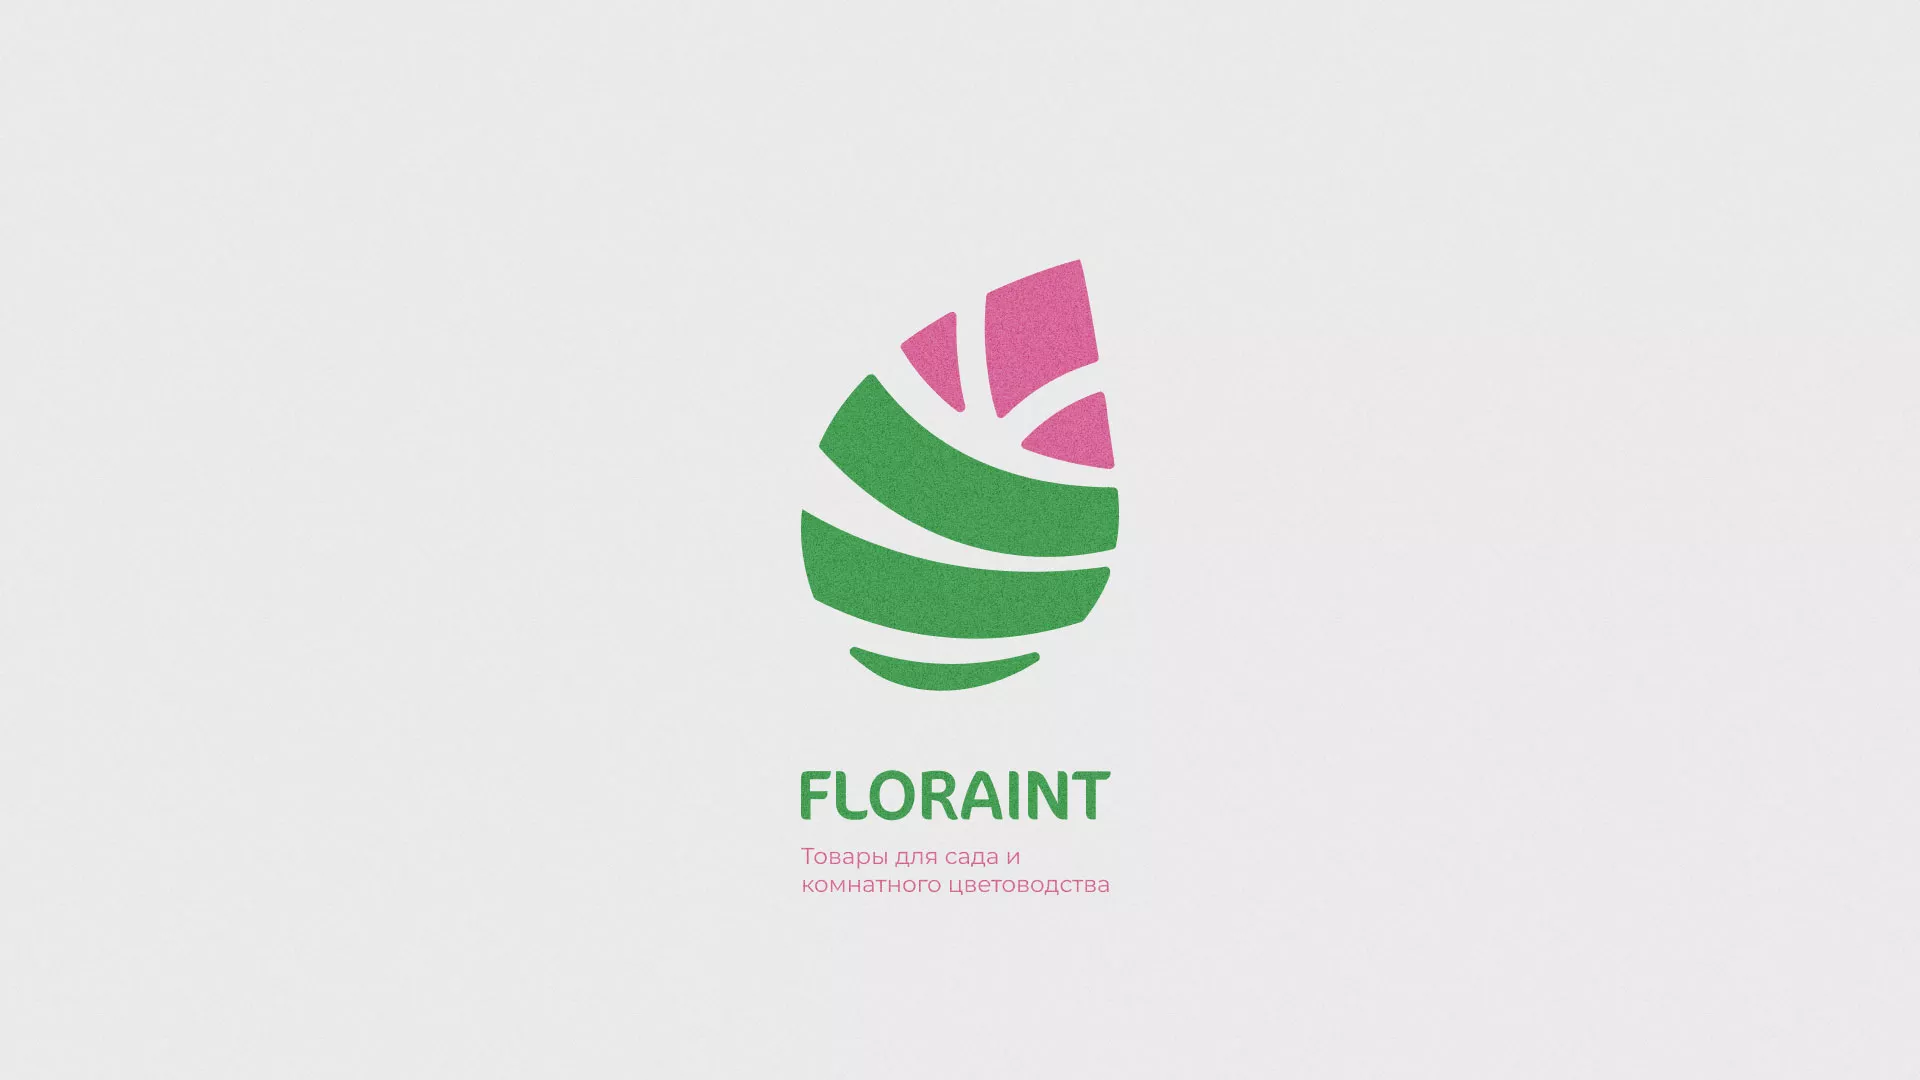 Разработка оформления профиля Instagram для магазина «Floraint» в Соколе